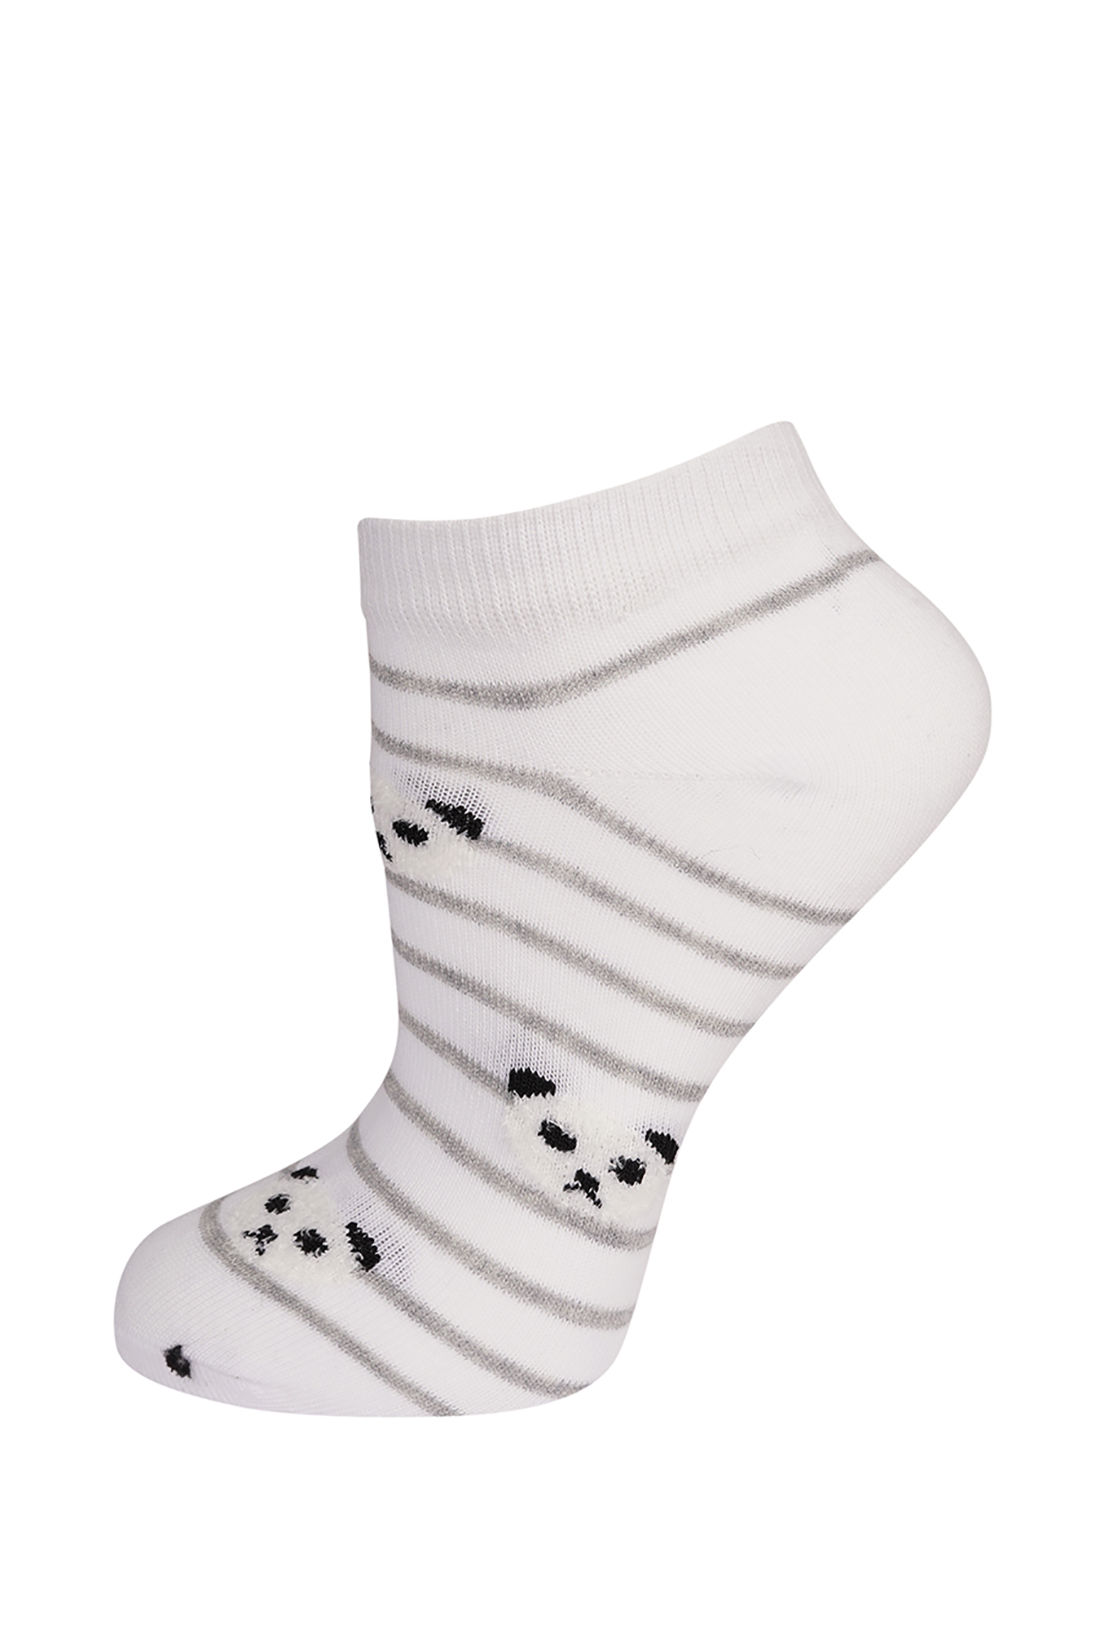 Женские носки (арт. baon B390008), размер 35/37, цвет белый Женские носки (арт. baon B390008) - фото 1